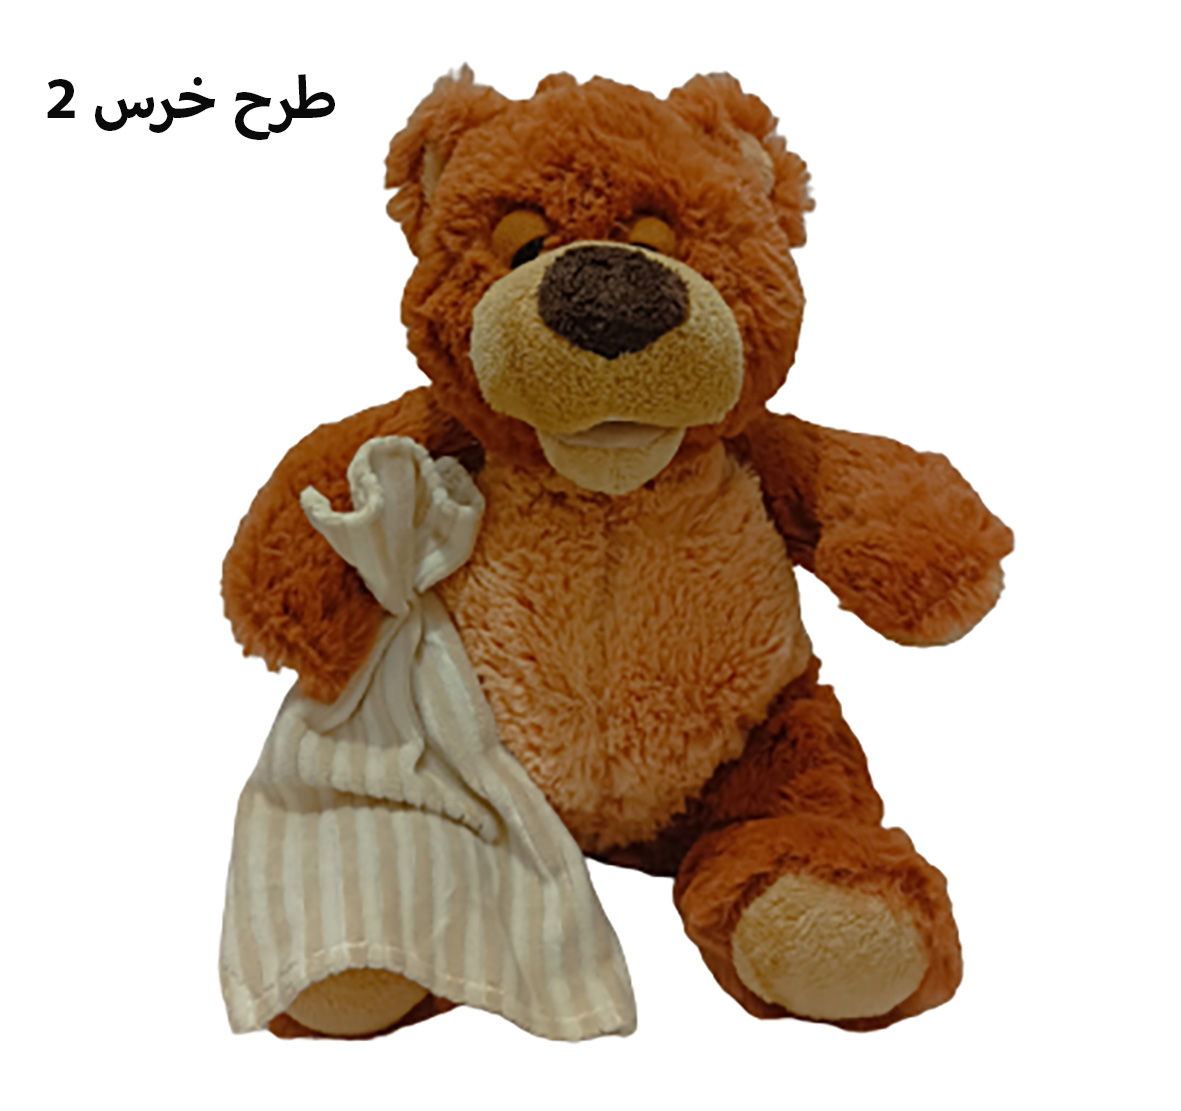 عروسک خرس پولیشی در چند طرح کد 2205042